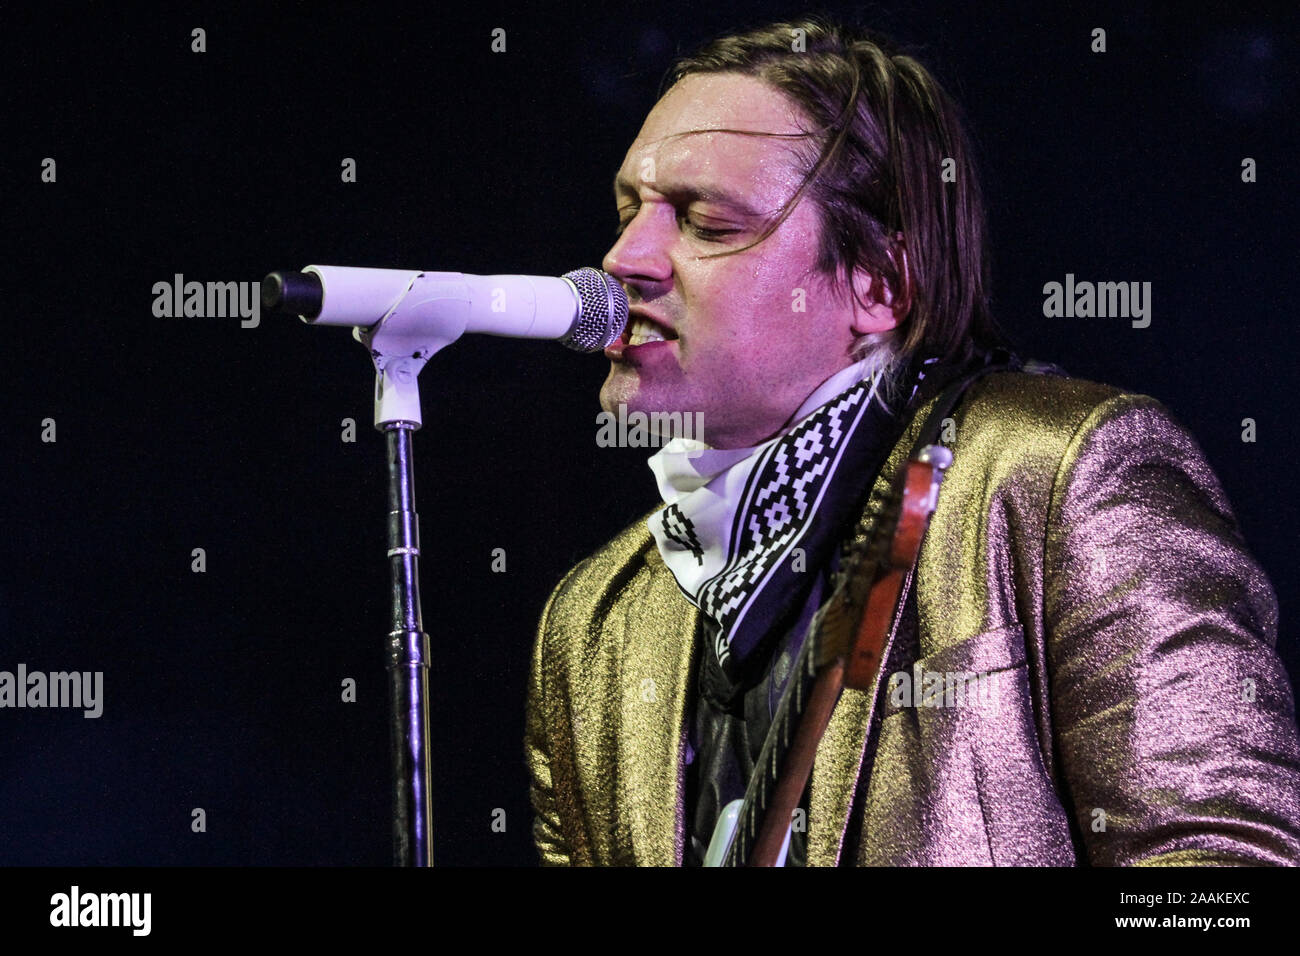 RIO DE JANEIRO, 04.04.2014 - A banda Arcade Fire se apresenta no Citibank Hall na noite desta sexta-feira. (Foto: Néstor J. Beremblum / Divulgação T4F Stock Photo